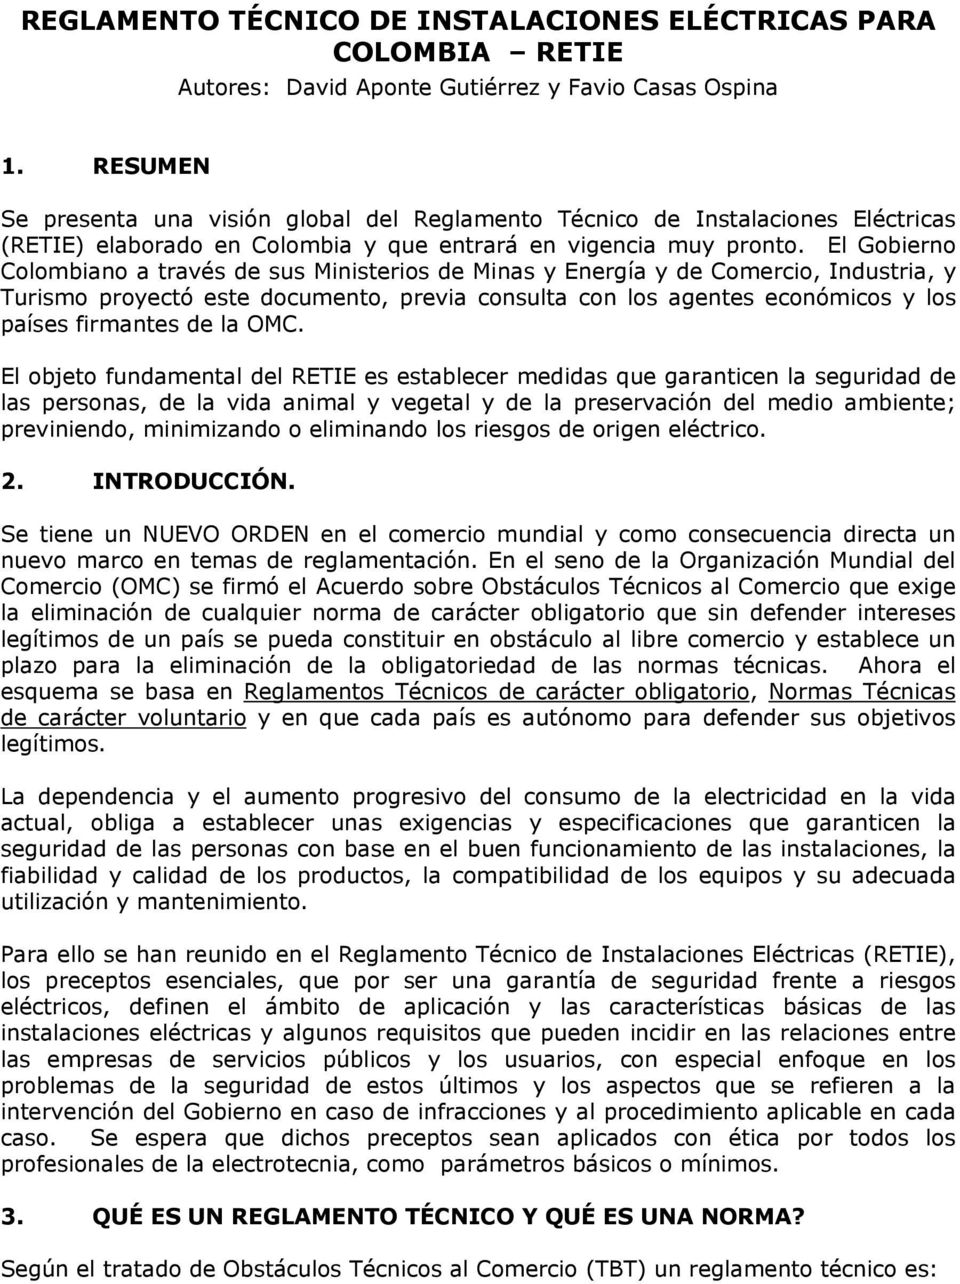 El Gobierno Colombiano a través de sus Ministerios de Minas y Energía y de Comercio, Industria, y Turismo proyectó este documento, previa consulta con los agentes económicos y los países firmantes de